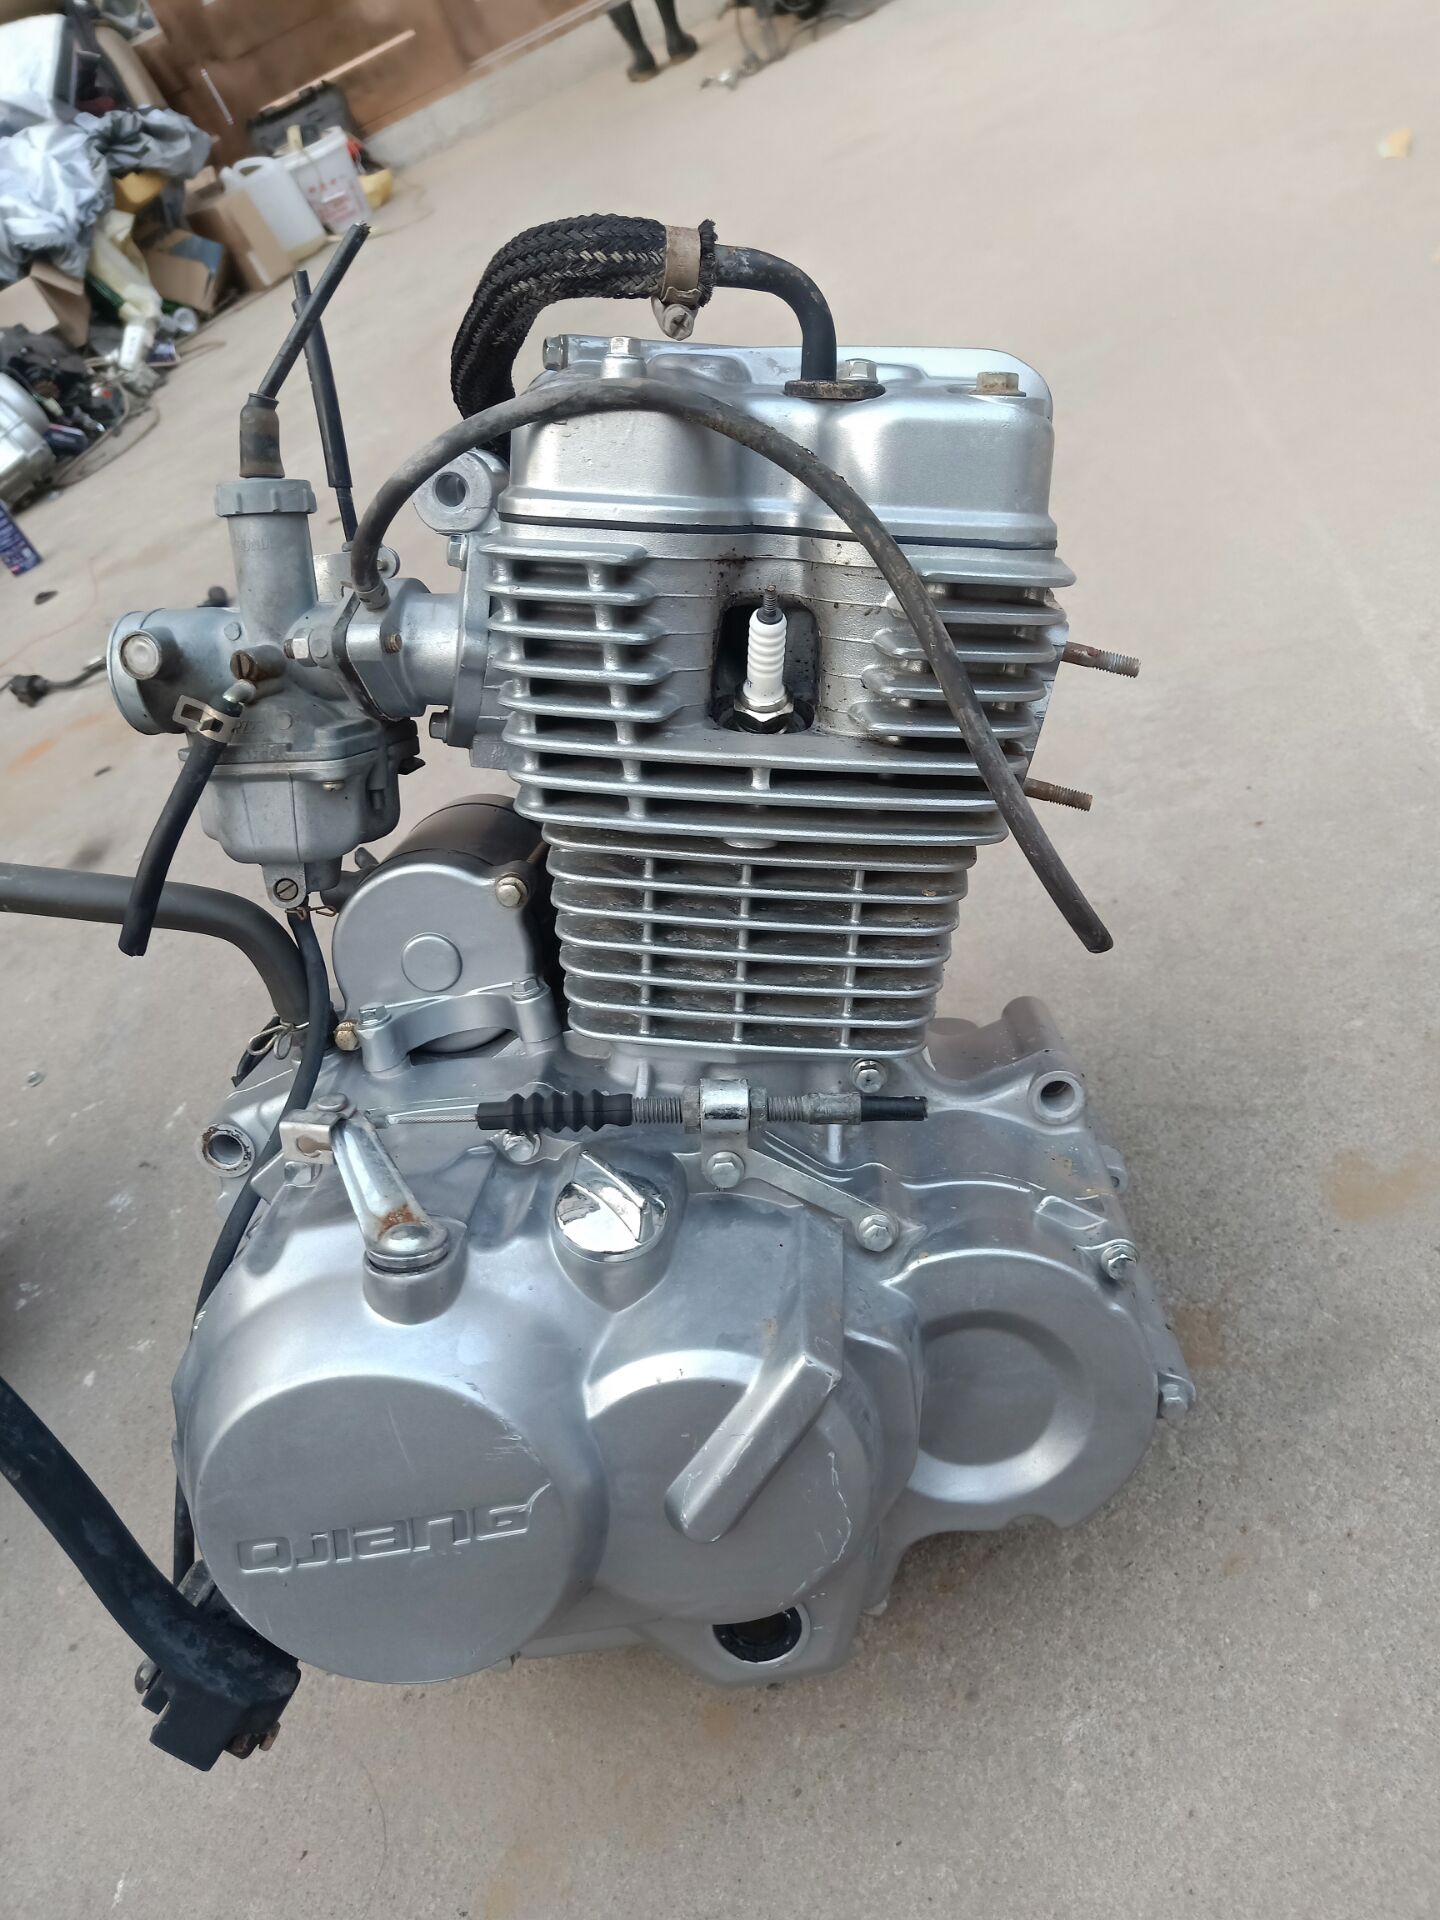 CG款平衡轴摩托车钱江150-19发动机成色新质量保证不烧机油震动小